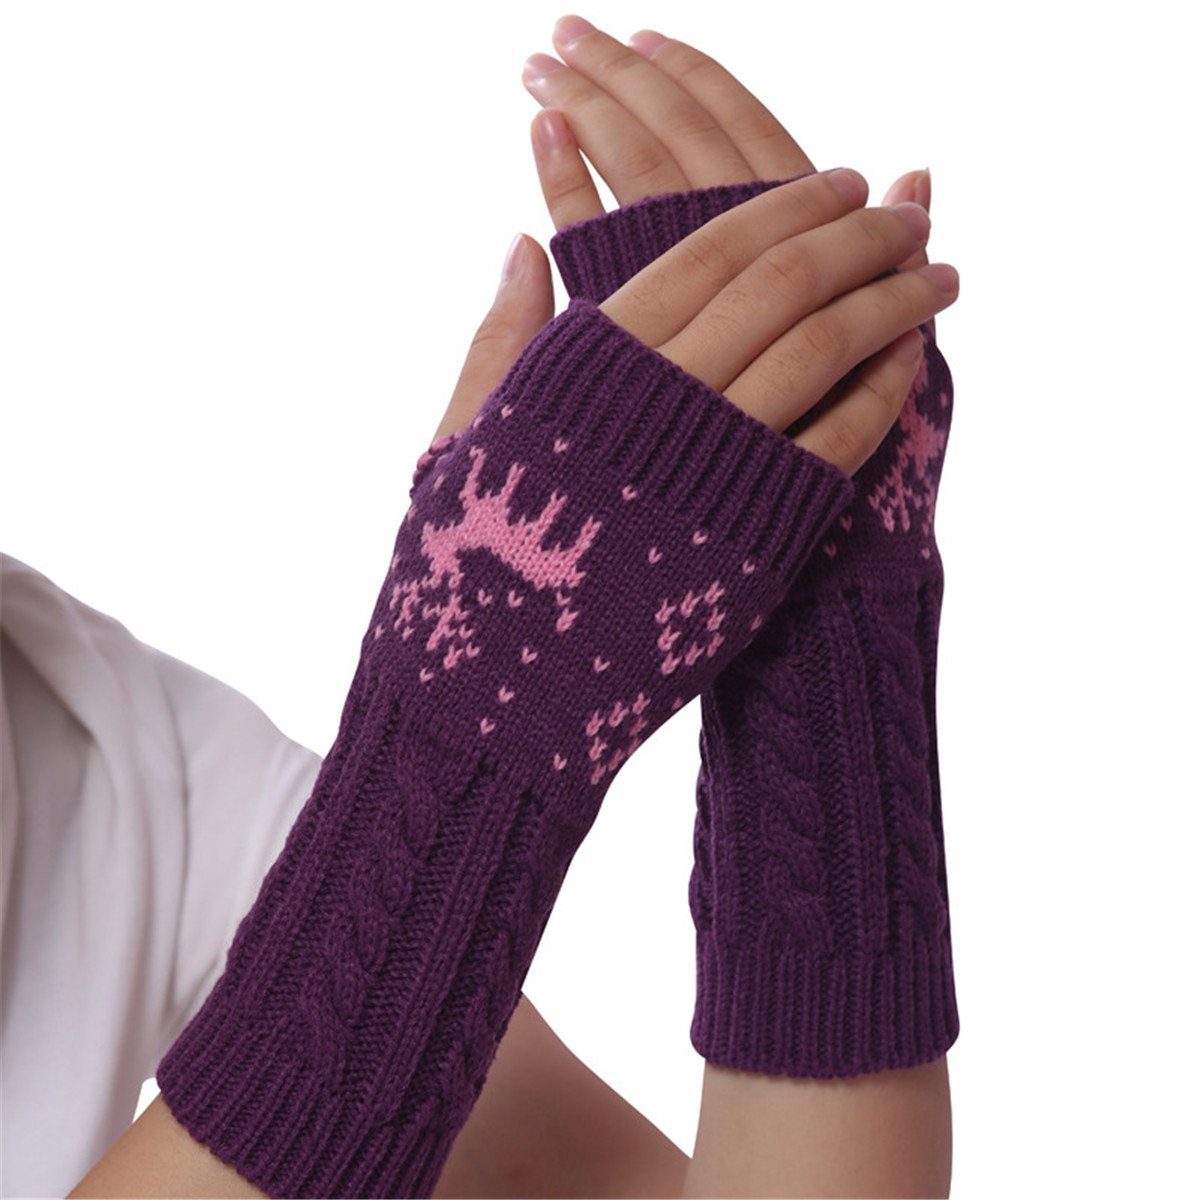 Die Sterne Trikot-Handschuhe Lila fingerlose Handschuhe mit Rentier-Design